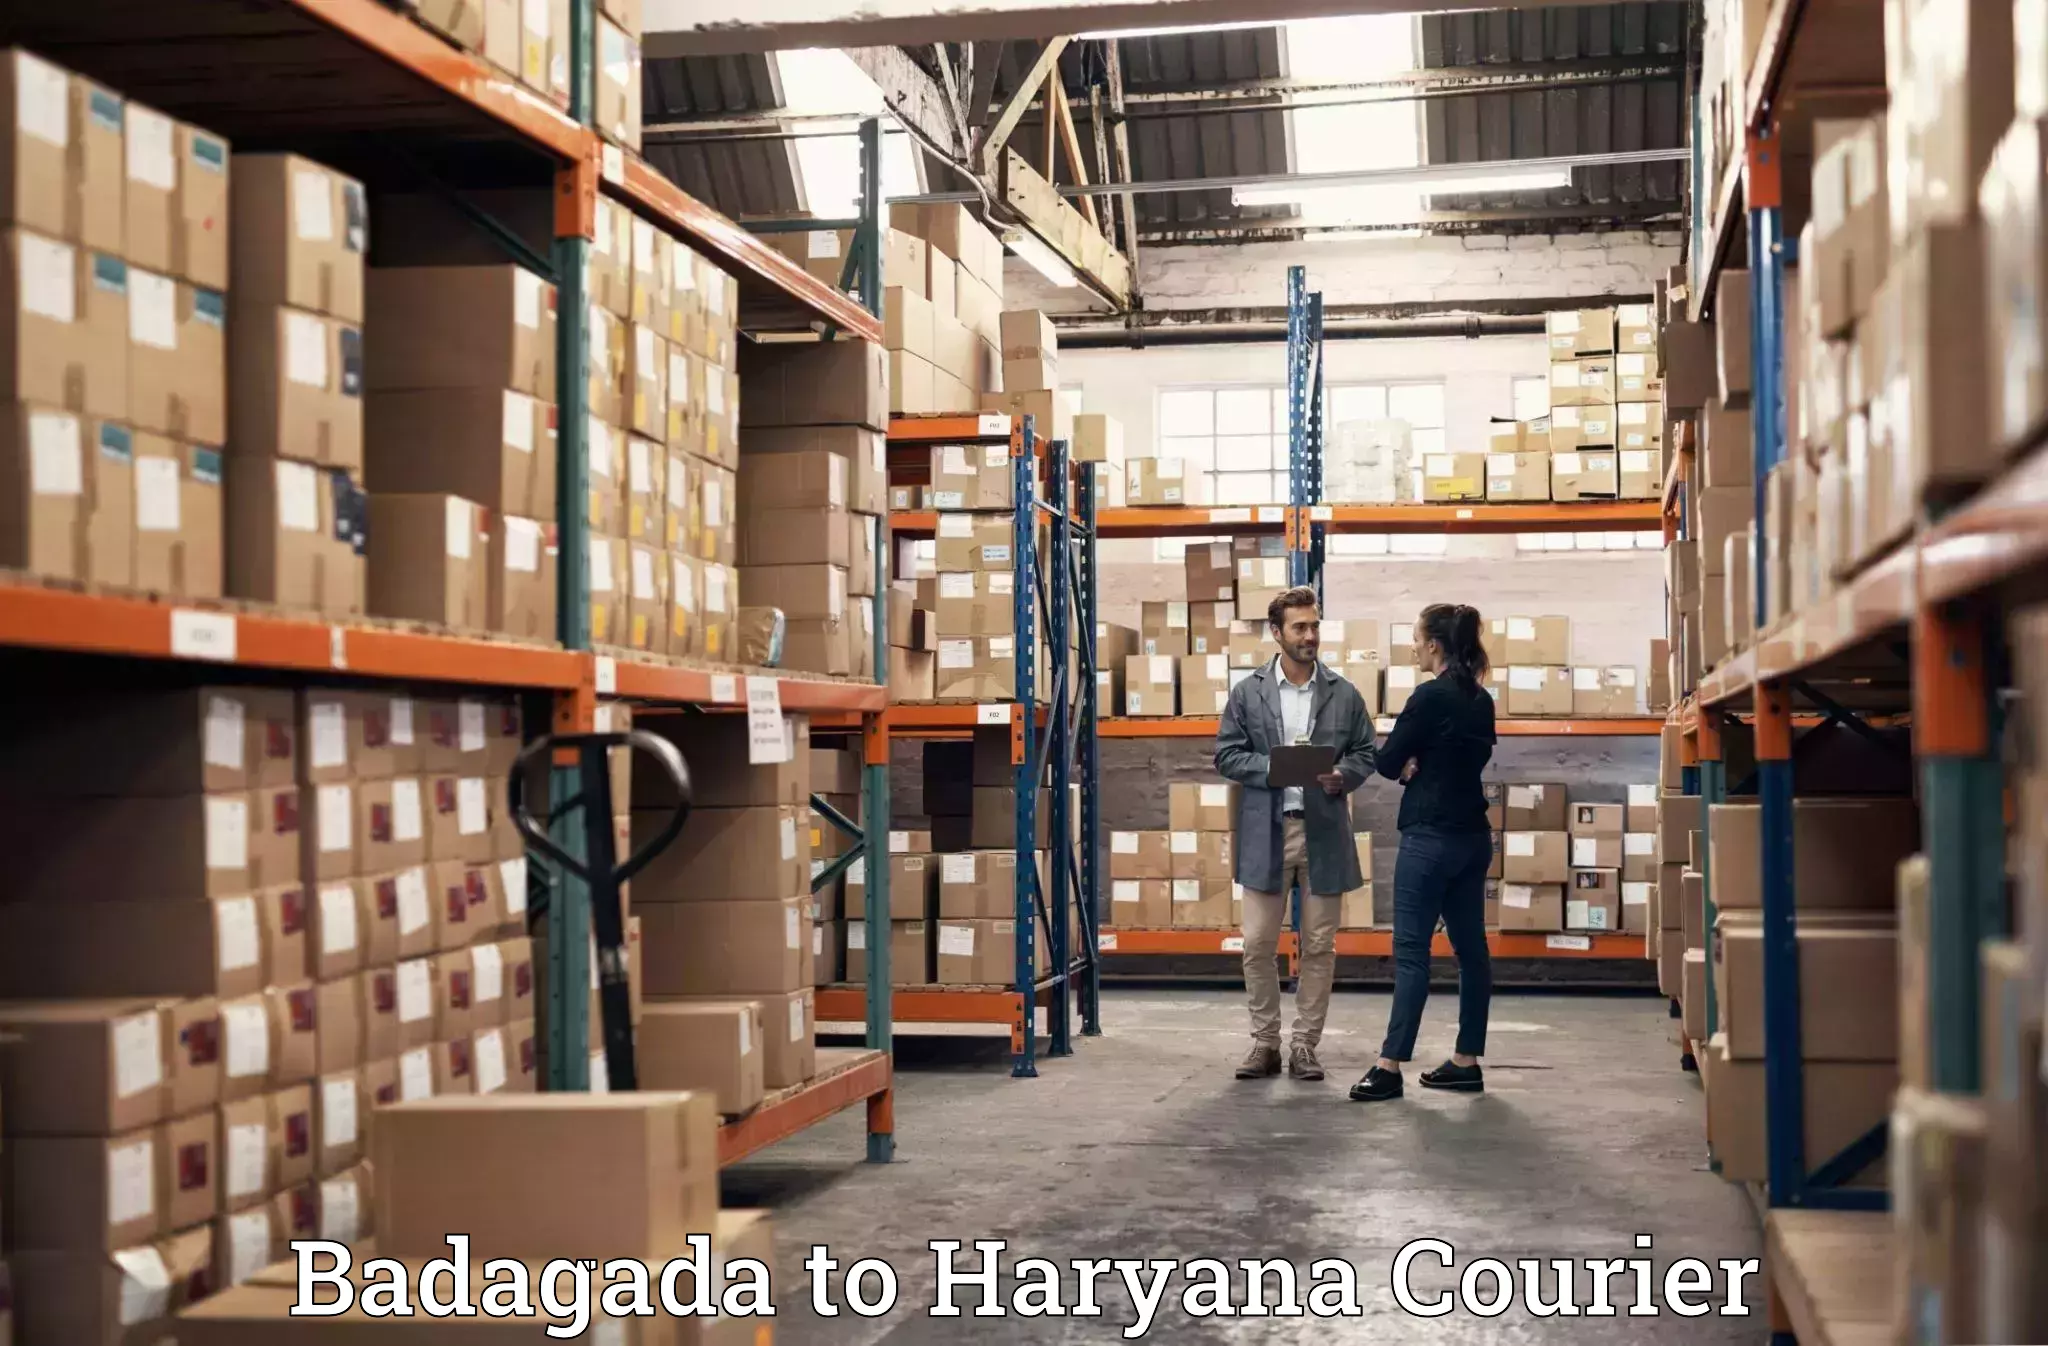 Quality moving and storage Badagada to NCR Haryana